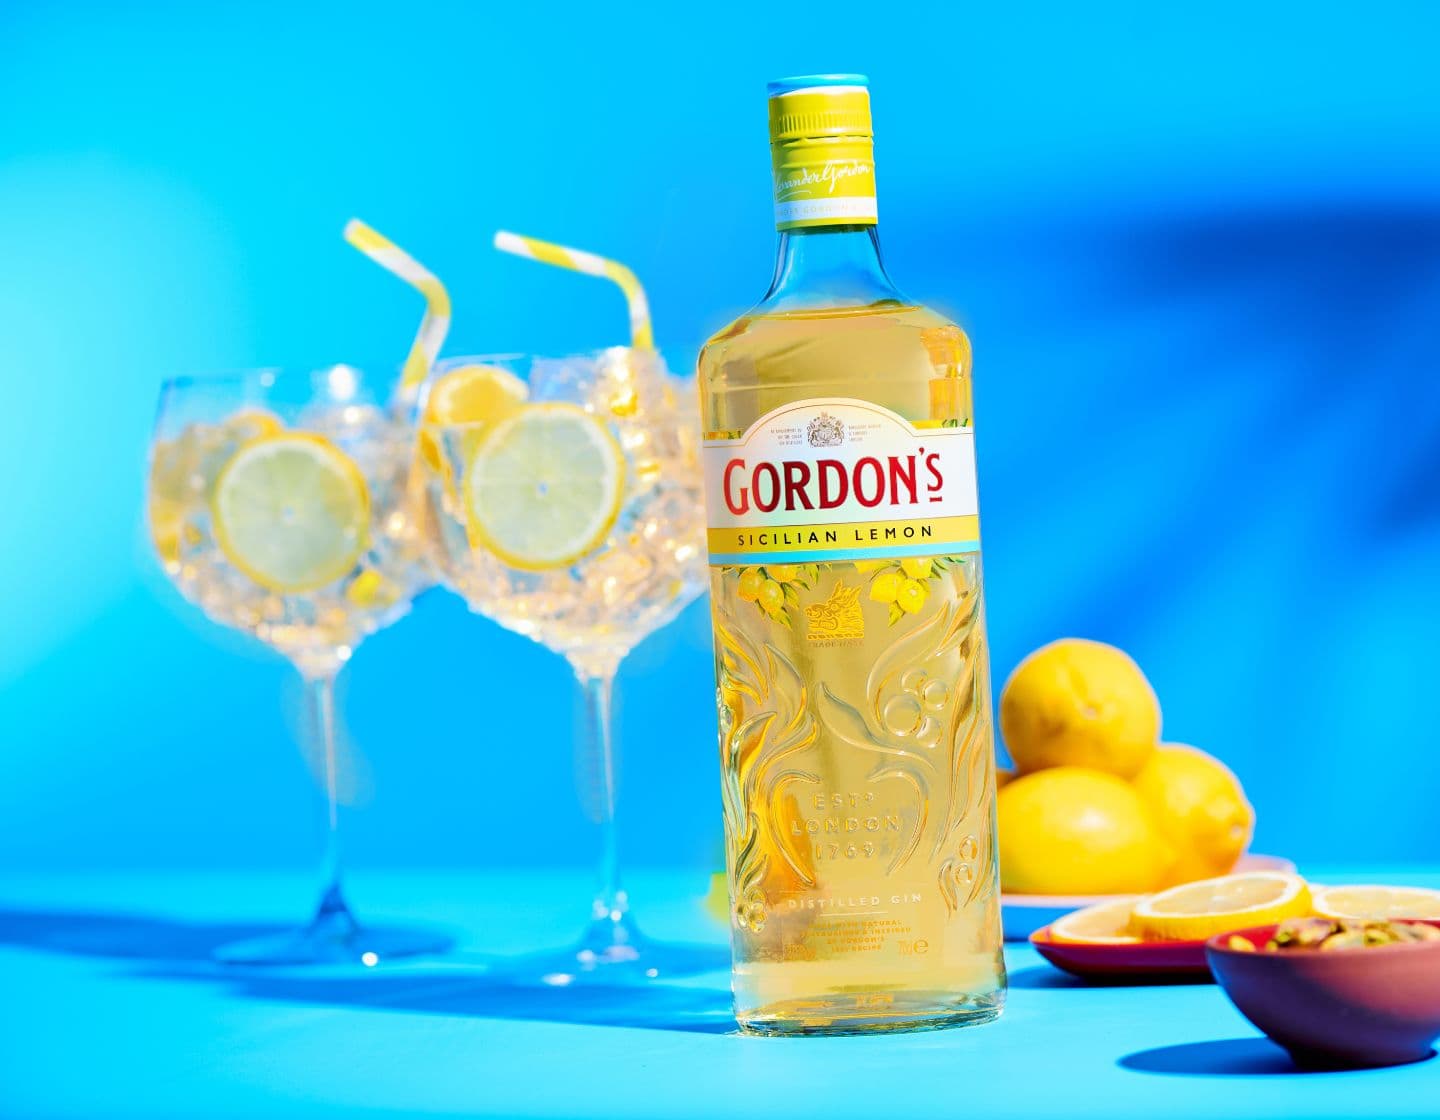  Bottle of Gordon’s Sicilian Lemon gin beside two G&T glasses against blue background 